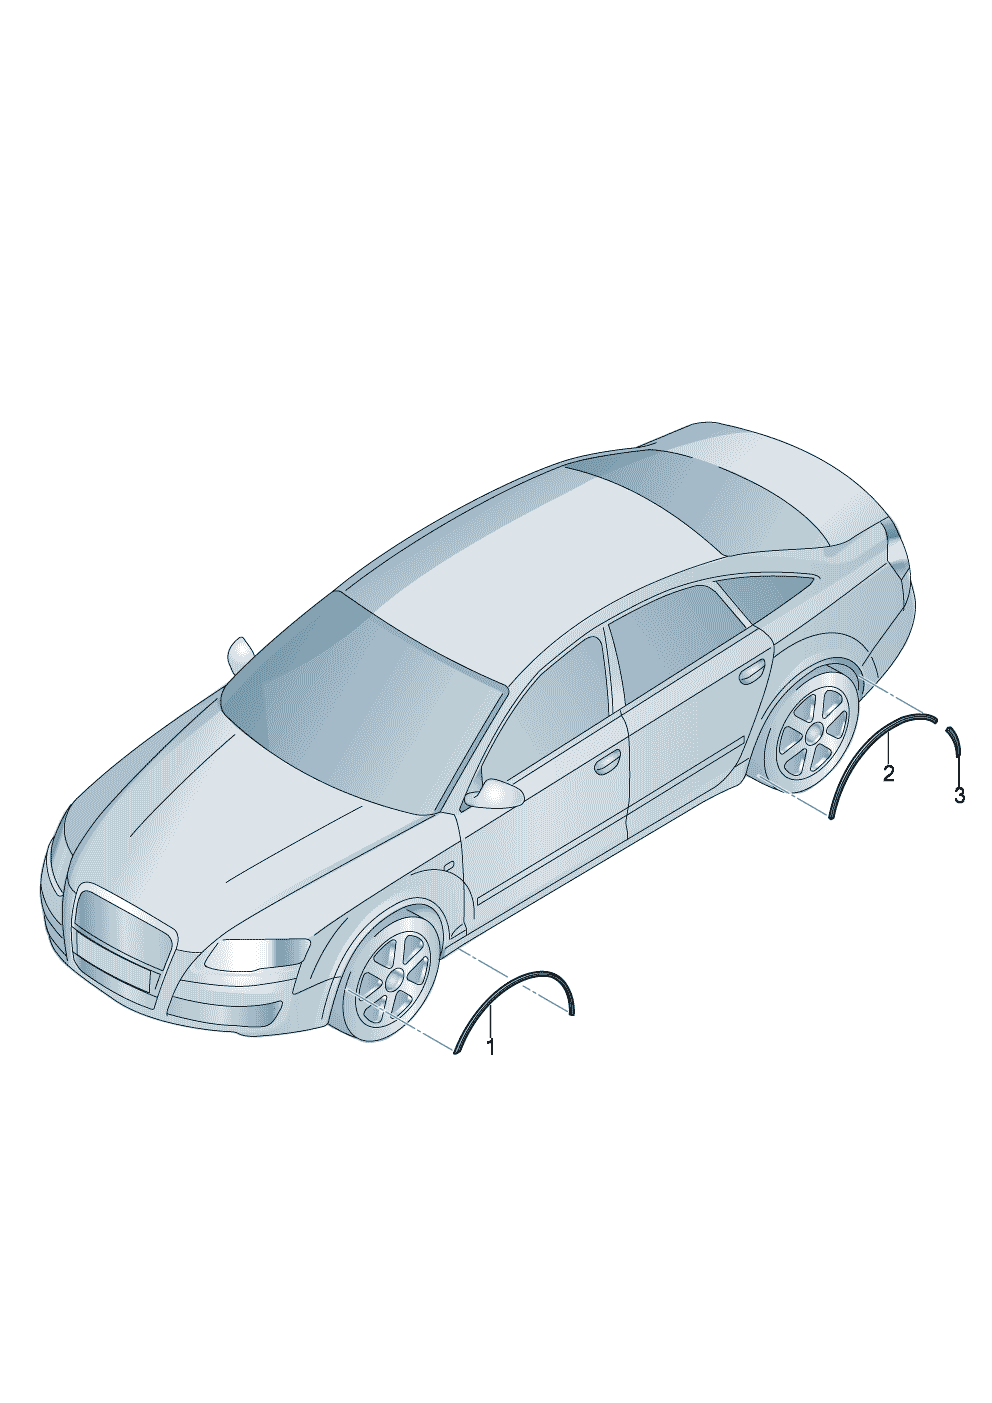 cubierta rueda  - Audi RS4/Avant quattro - rs4